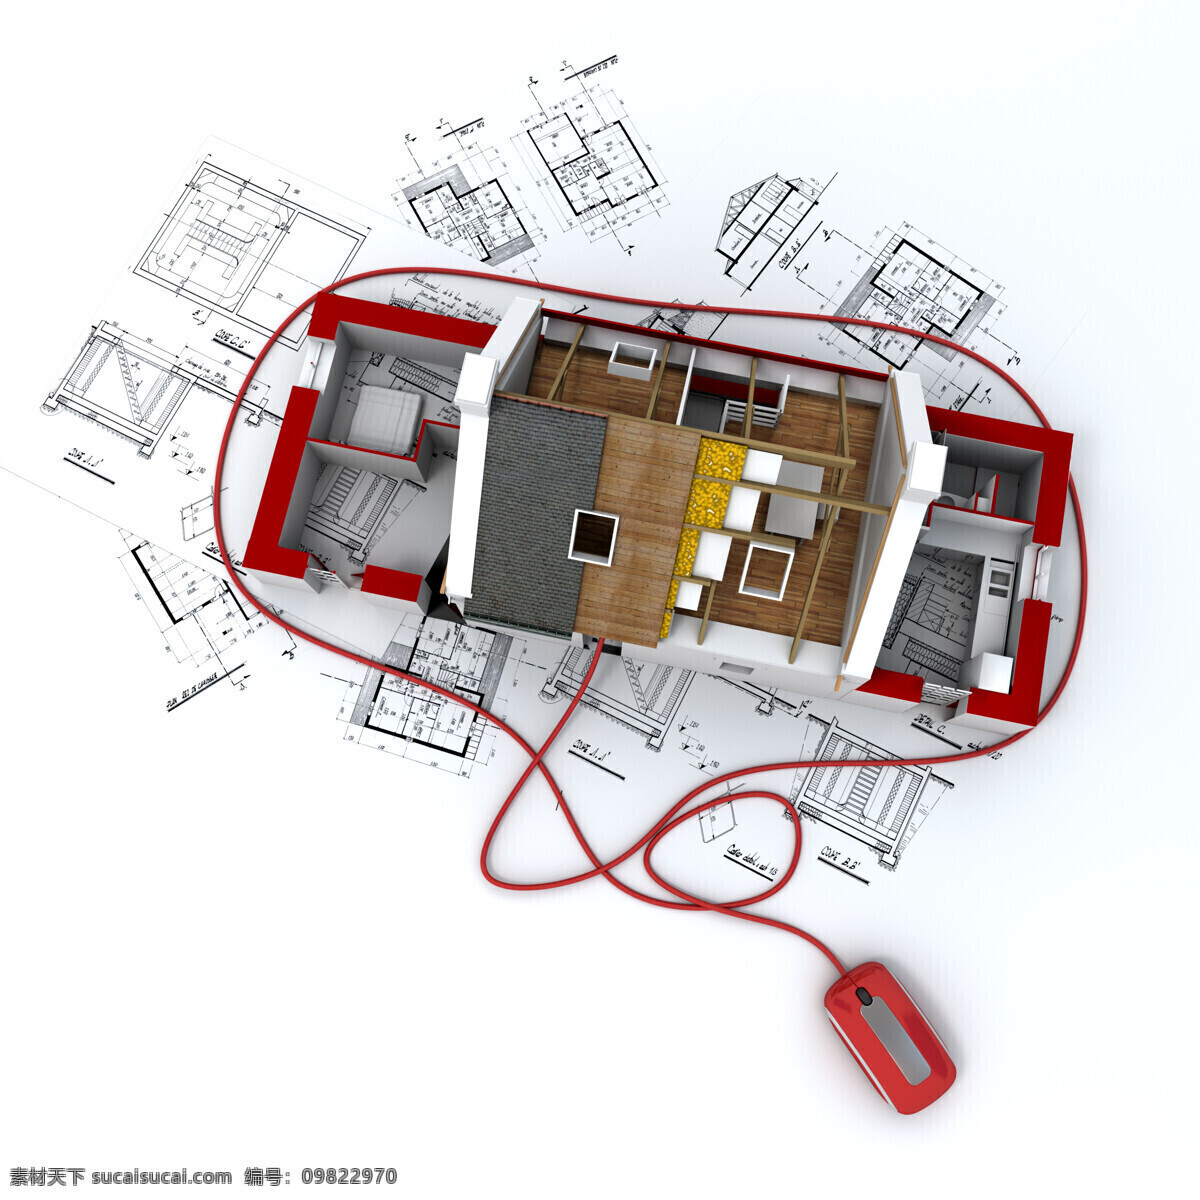 3d 建筑模型 图纸 鼠标 建筑设计 建筑图纸 示意图 样板 别墅 模型 住宅 平面图 工程图 设计图 建筑 房地产 3d建筑设计 3d设计